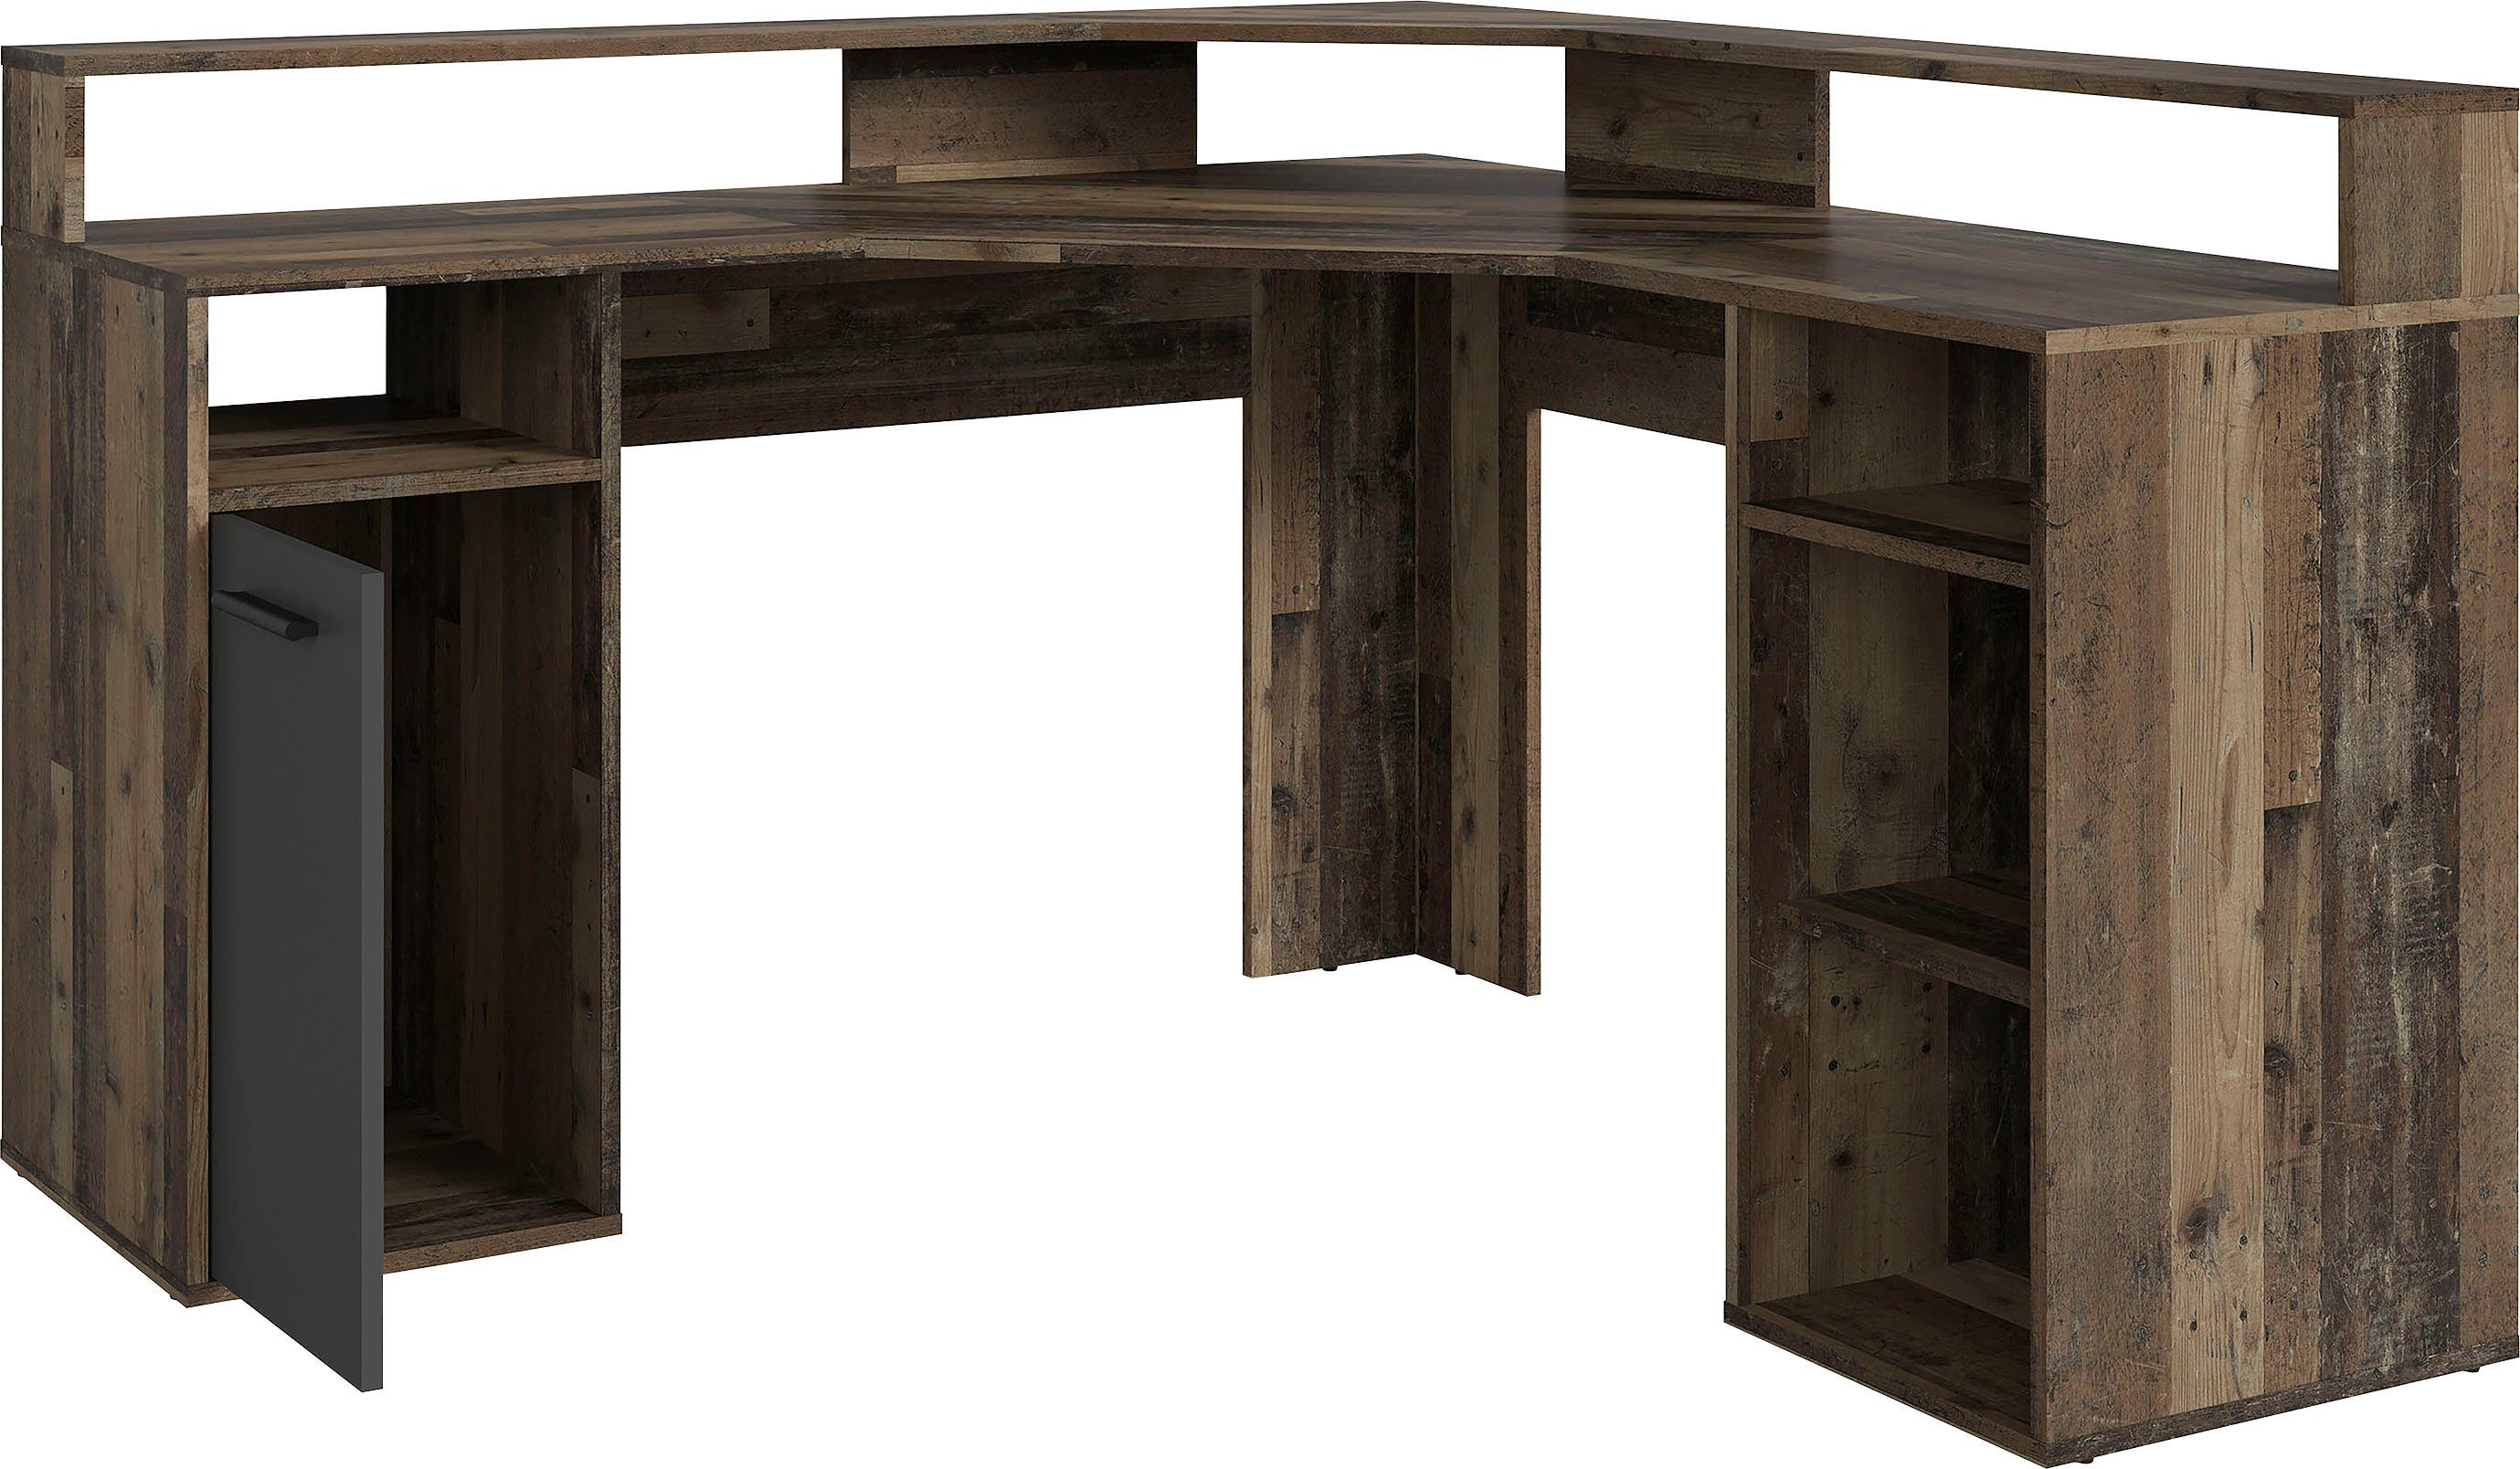 | / Wood | 139 Old Breite Fox, cm, Wood Old Old Wood moderner Gamingtisch byLIVING Anthrazit Eckschreibtisch